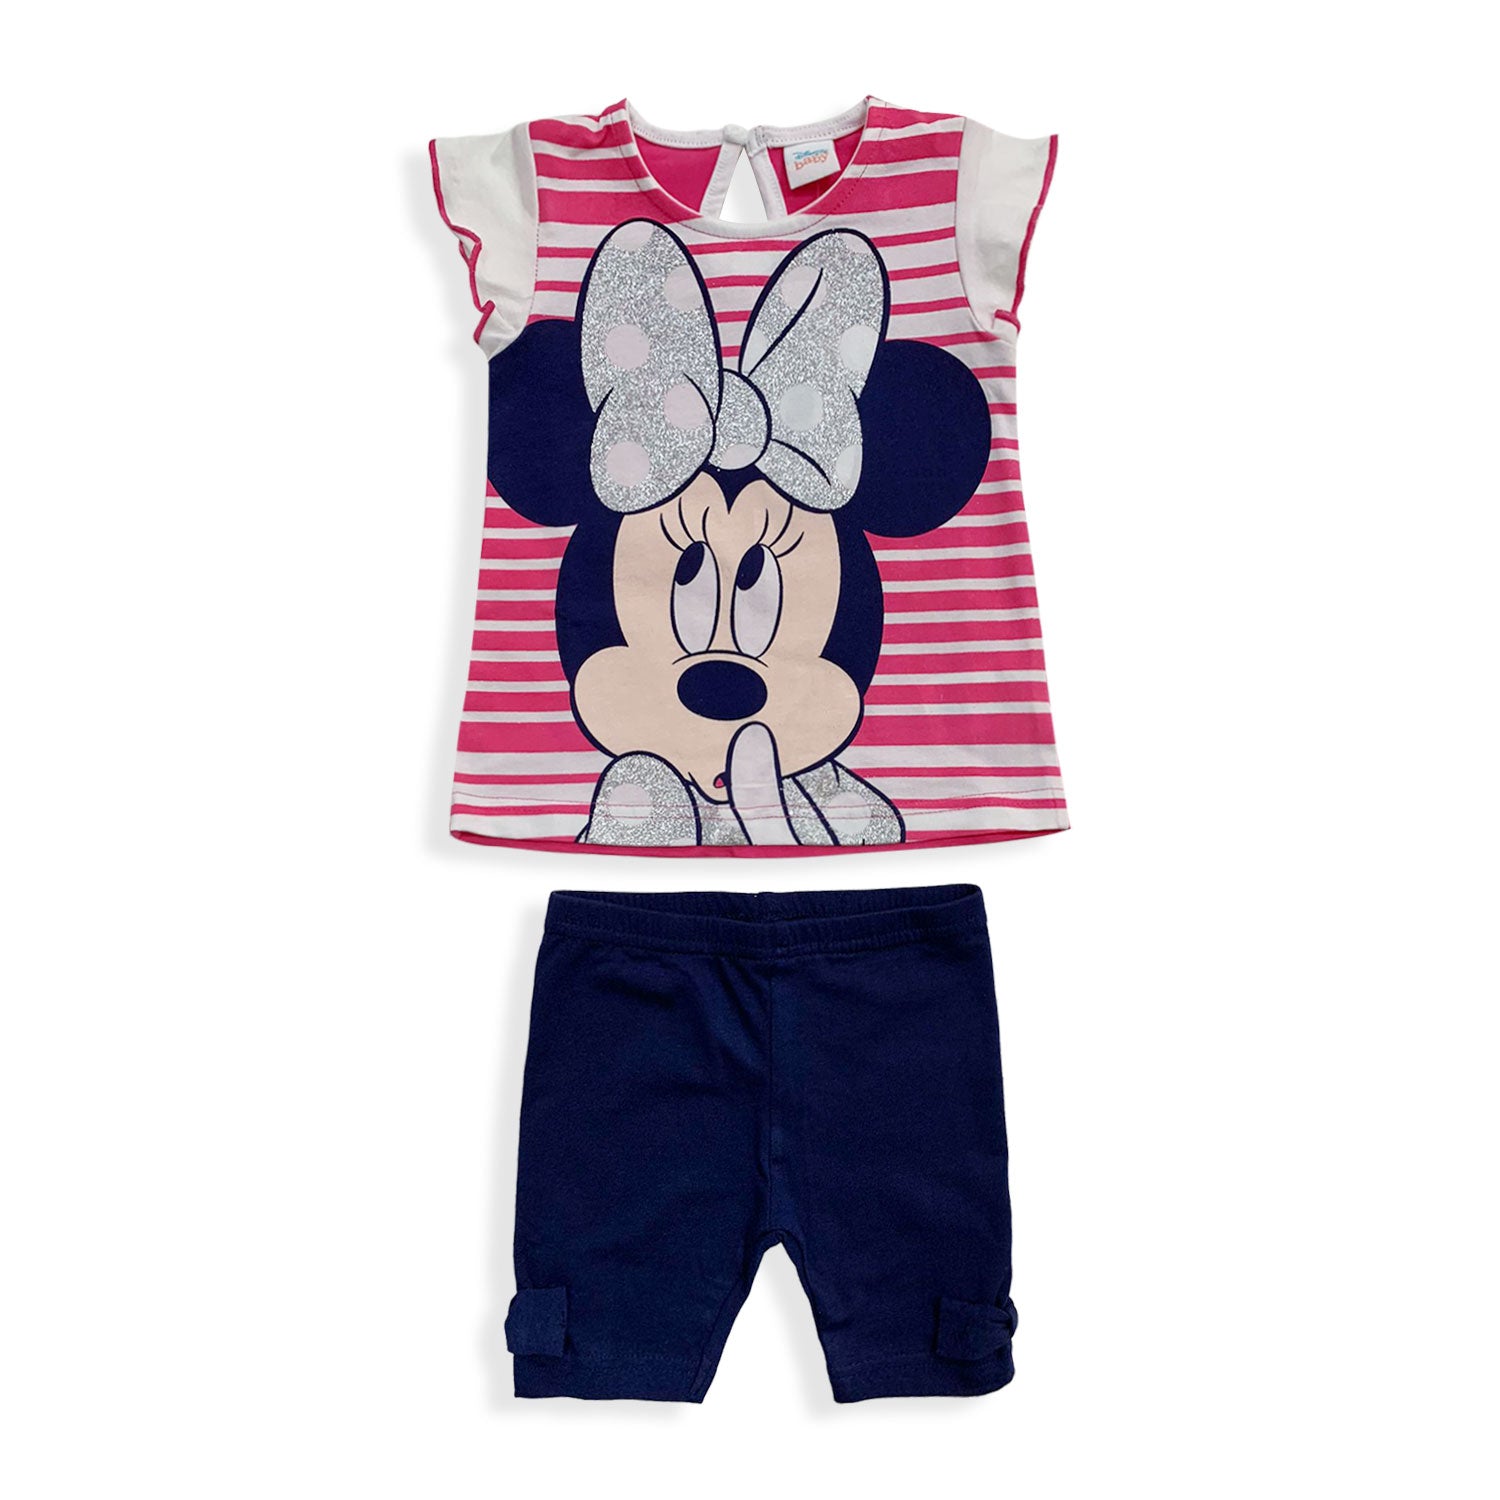 Pigiama Disney Minnie Mouse in cotone mezze maniche neonato bambina 5493